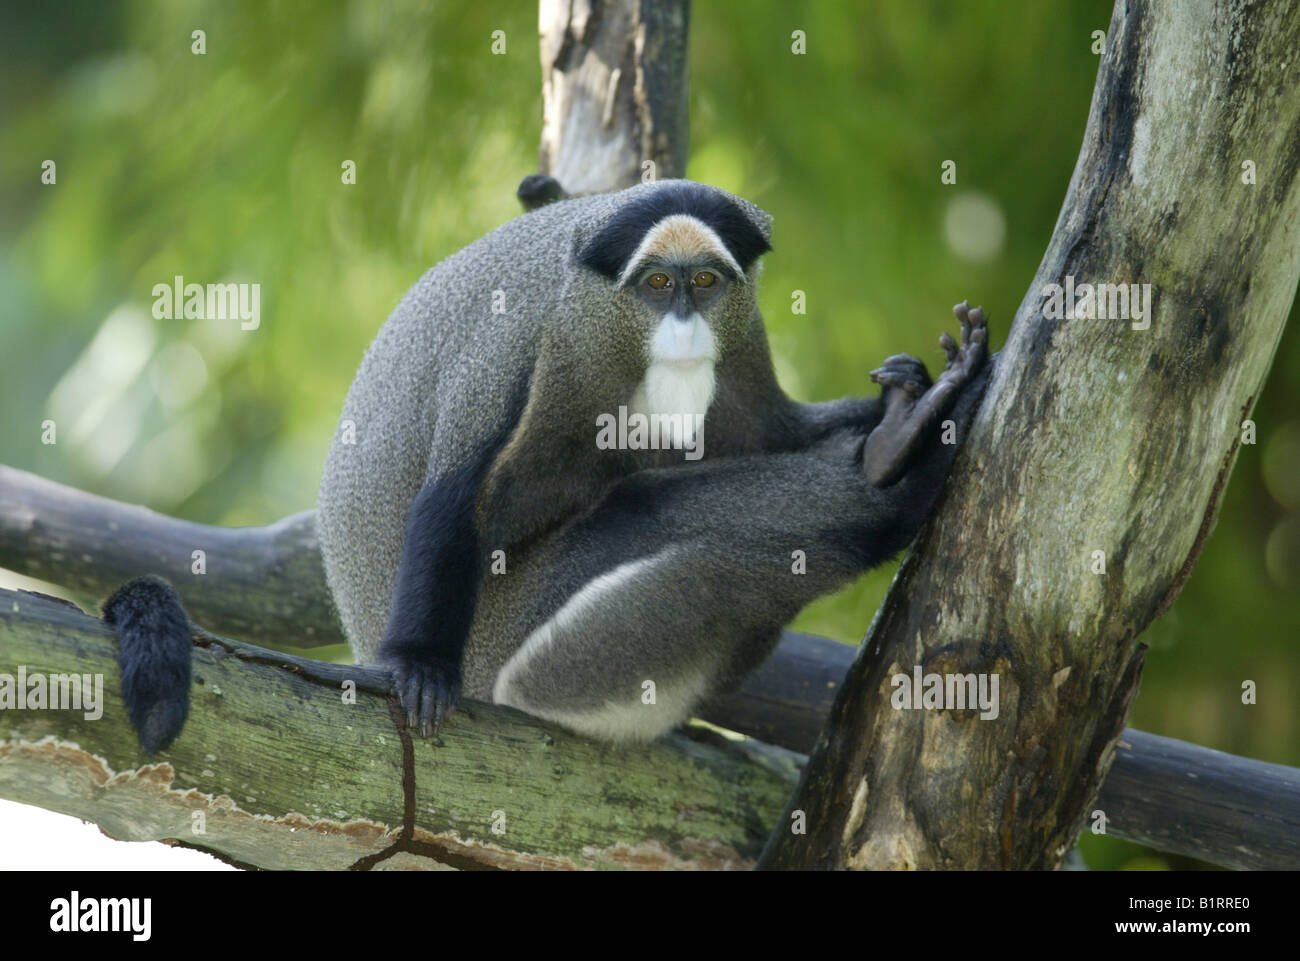 Brazza's Monkey (Cercopithecus neglectus), Africa Stock Photo